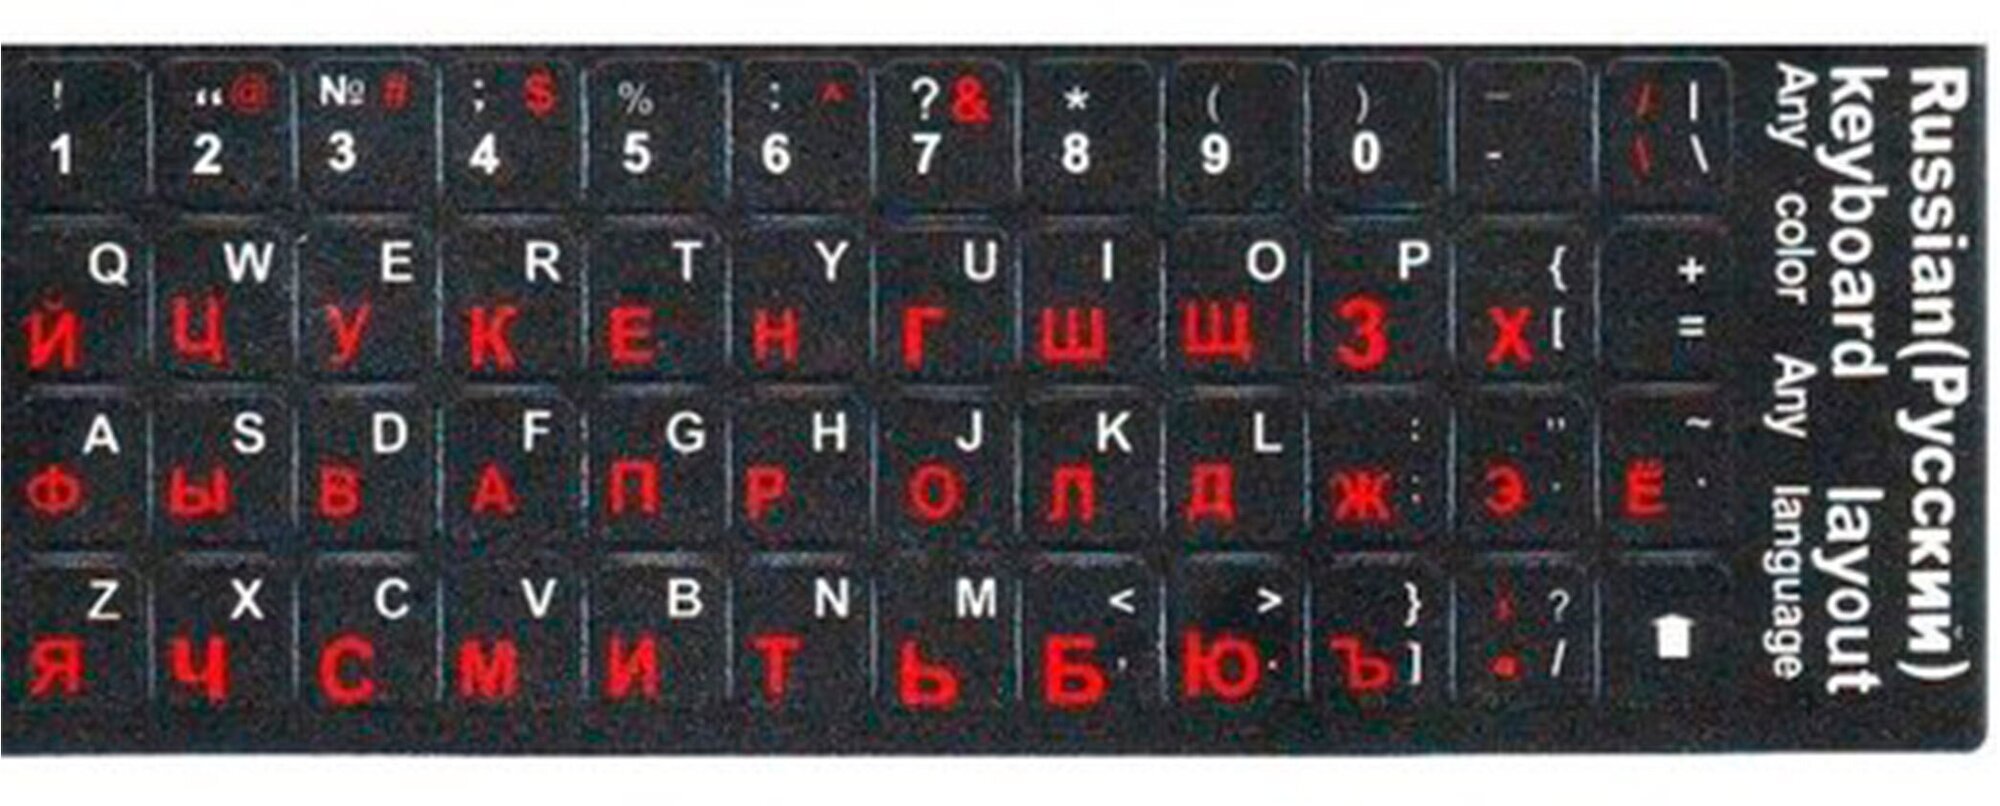 Наклейки на клавиатуру с русскими буквами для ноутбука, настольного компьютера